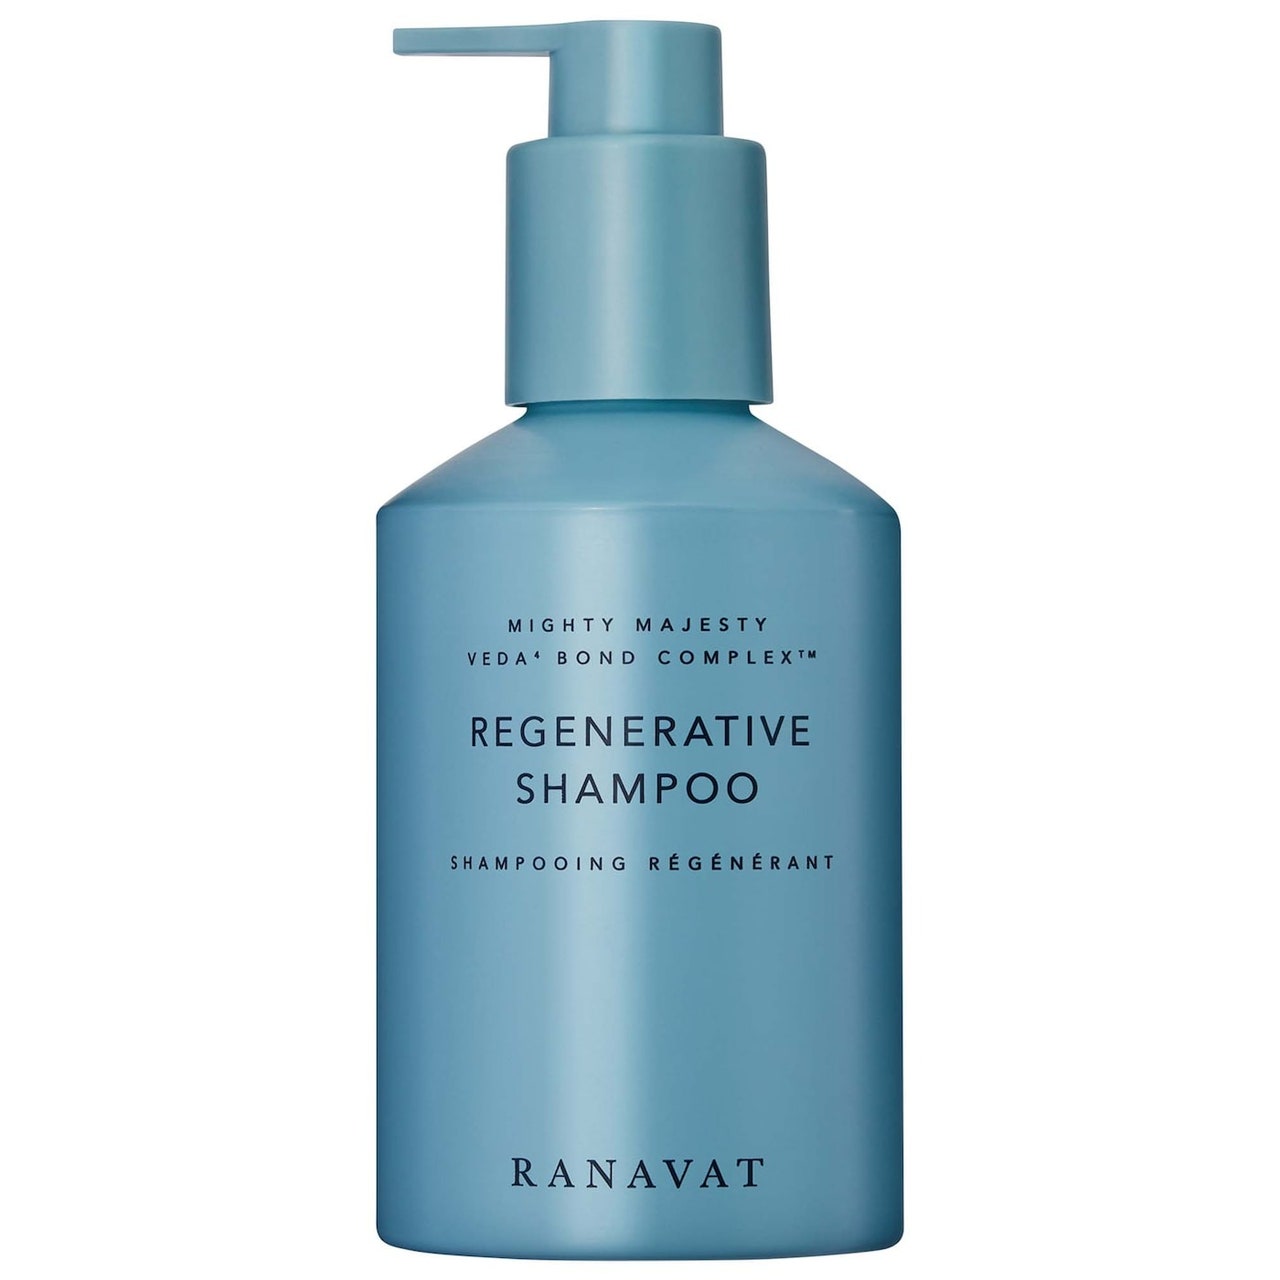 Ranavat Regenerative Veda Bond Repair Shampoo hellblaue Pumpflasche Shampoo auf weißem Hintergrund